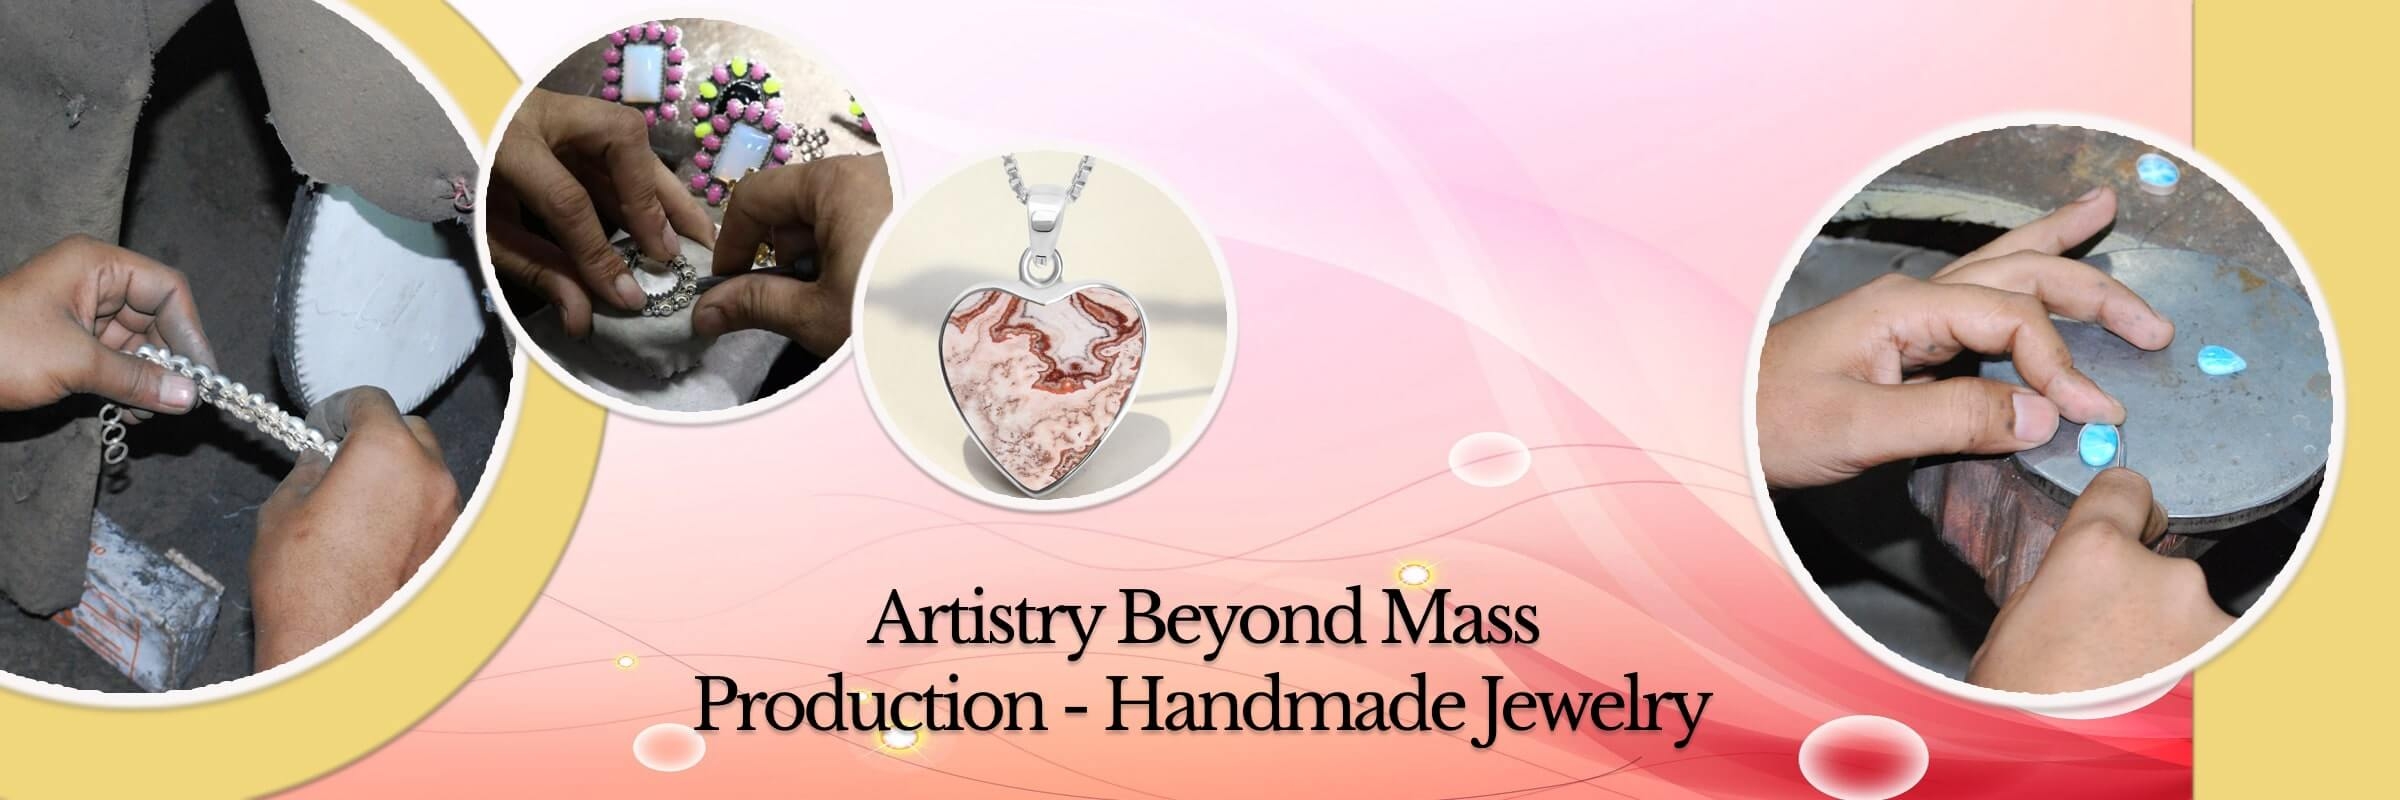 Pros of Handmade Jewelry